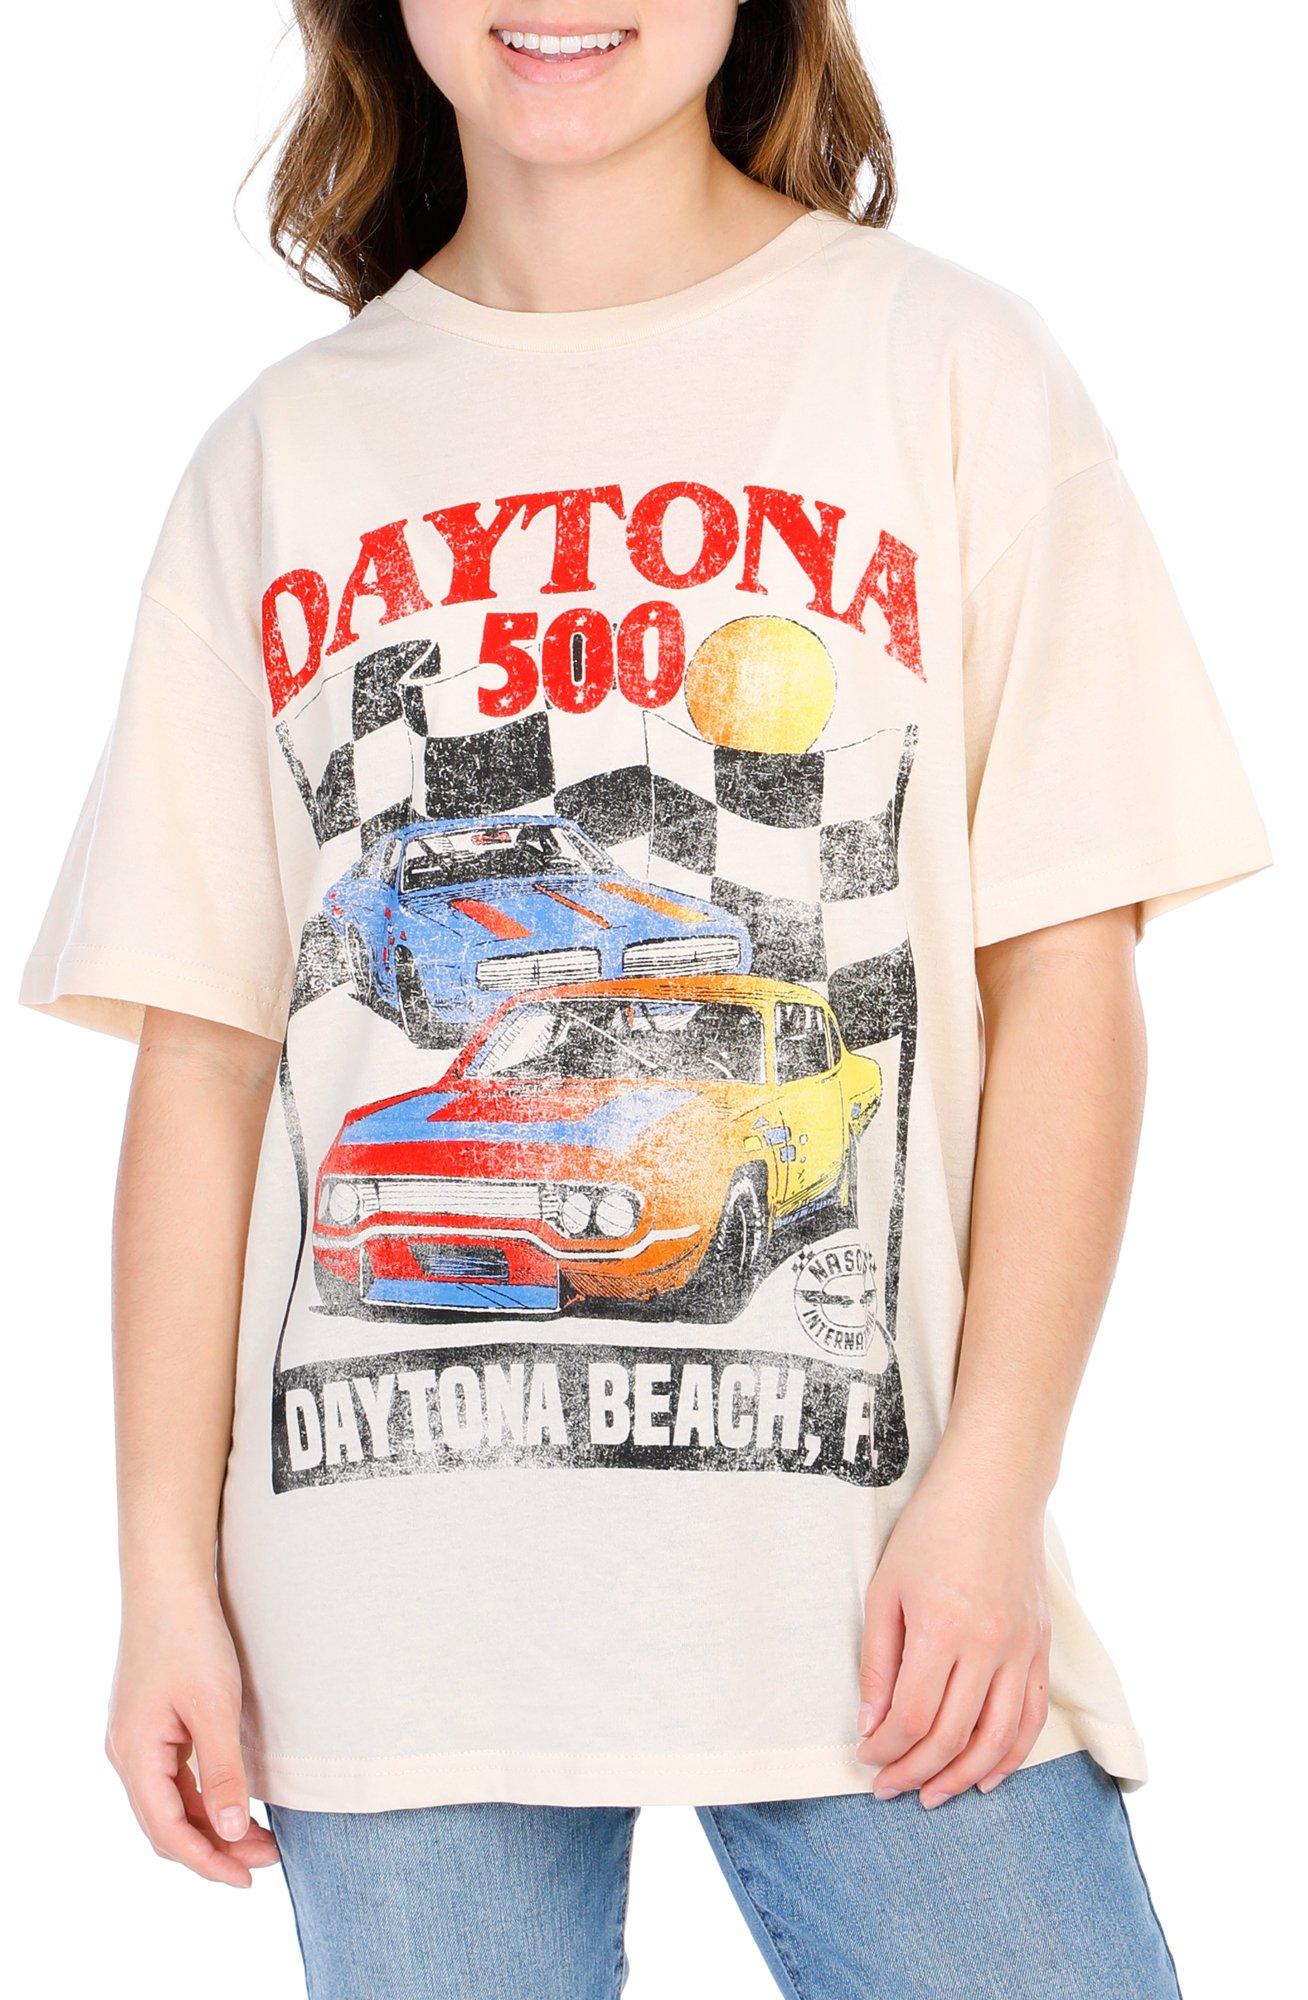 Juniors Daytona 500 Graphic Top